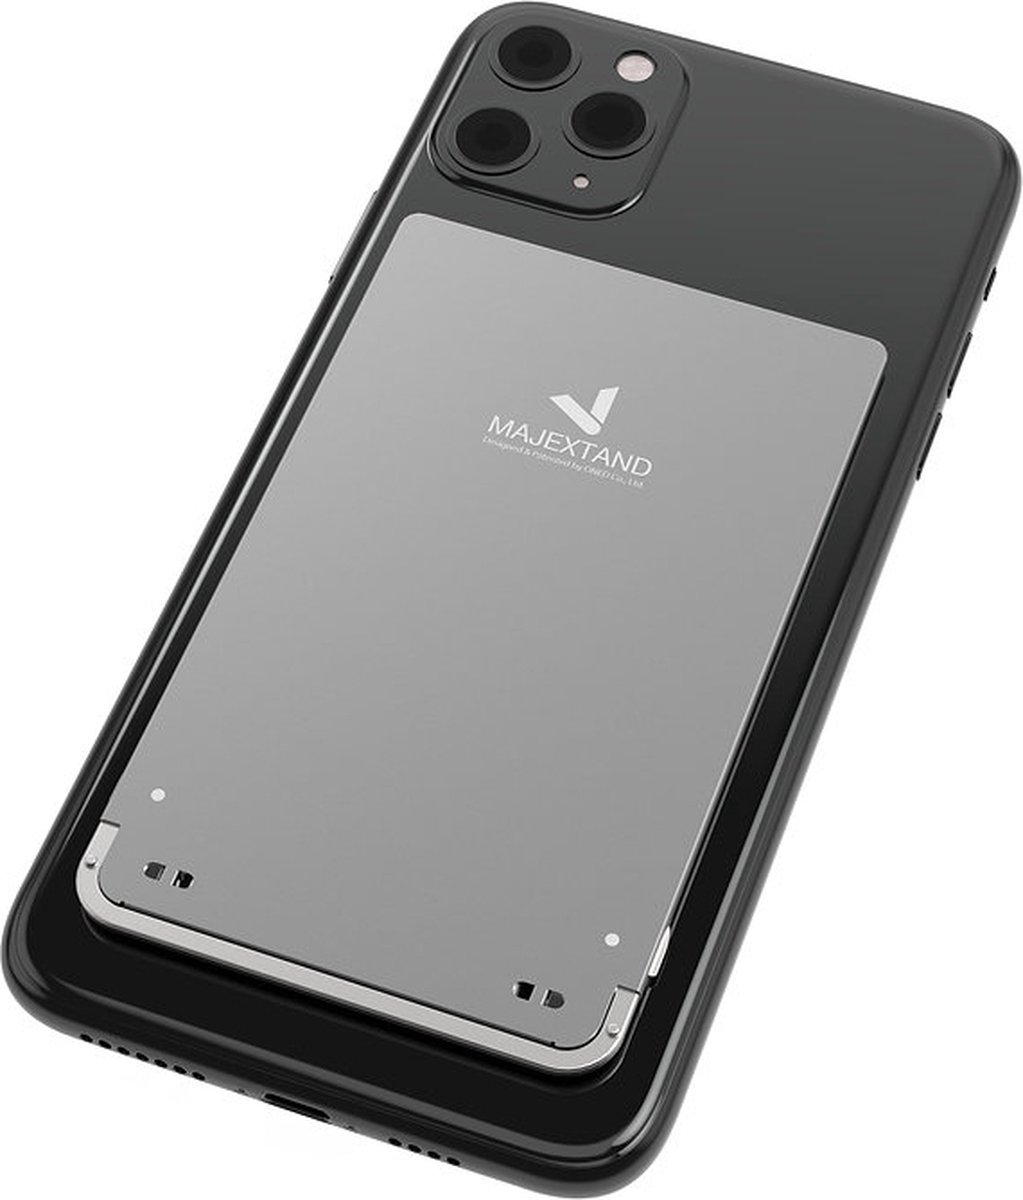 Majextand M voor Smartphone en Tablet - Space Gray